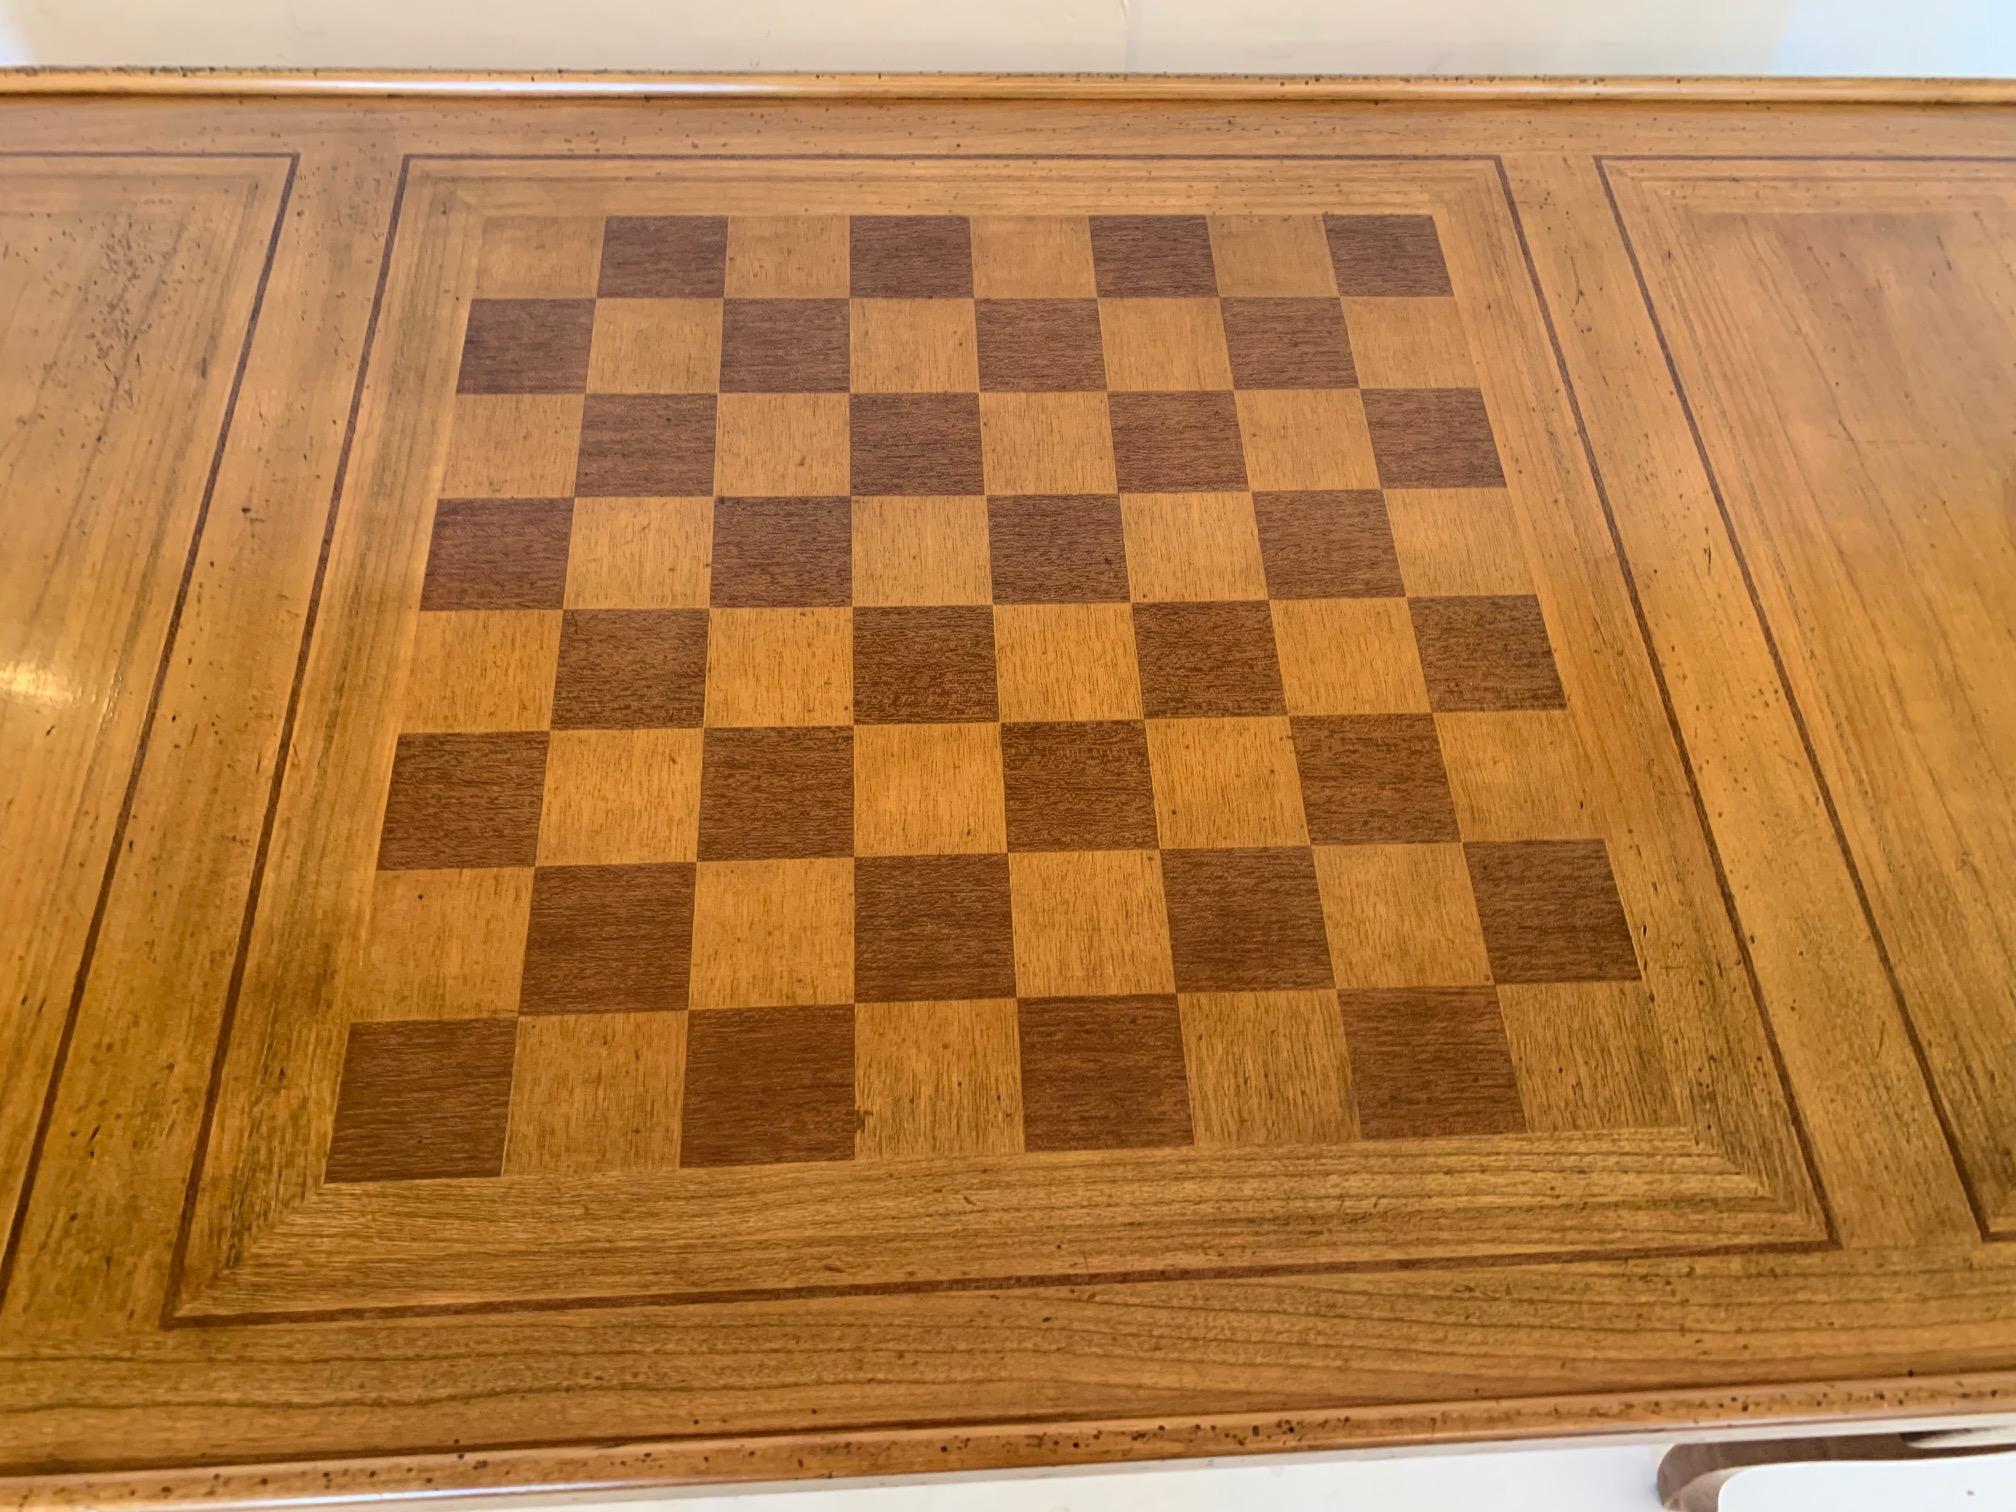 Ein vielseitiger und schöner französischer Spieltisch aus Mahagoni und Obstholz mit Intarsien.
Backgammon, Dame, Schach und ein seitlicher Filzkartentisch. Hübsch aus jedem Blickwinkel, da der Tisch 
Sie ist rundherum fertig und hat zwei